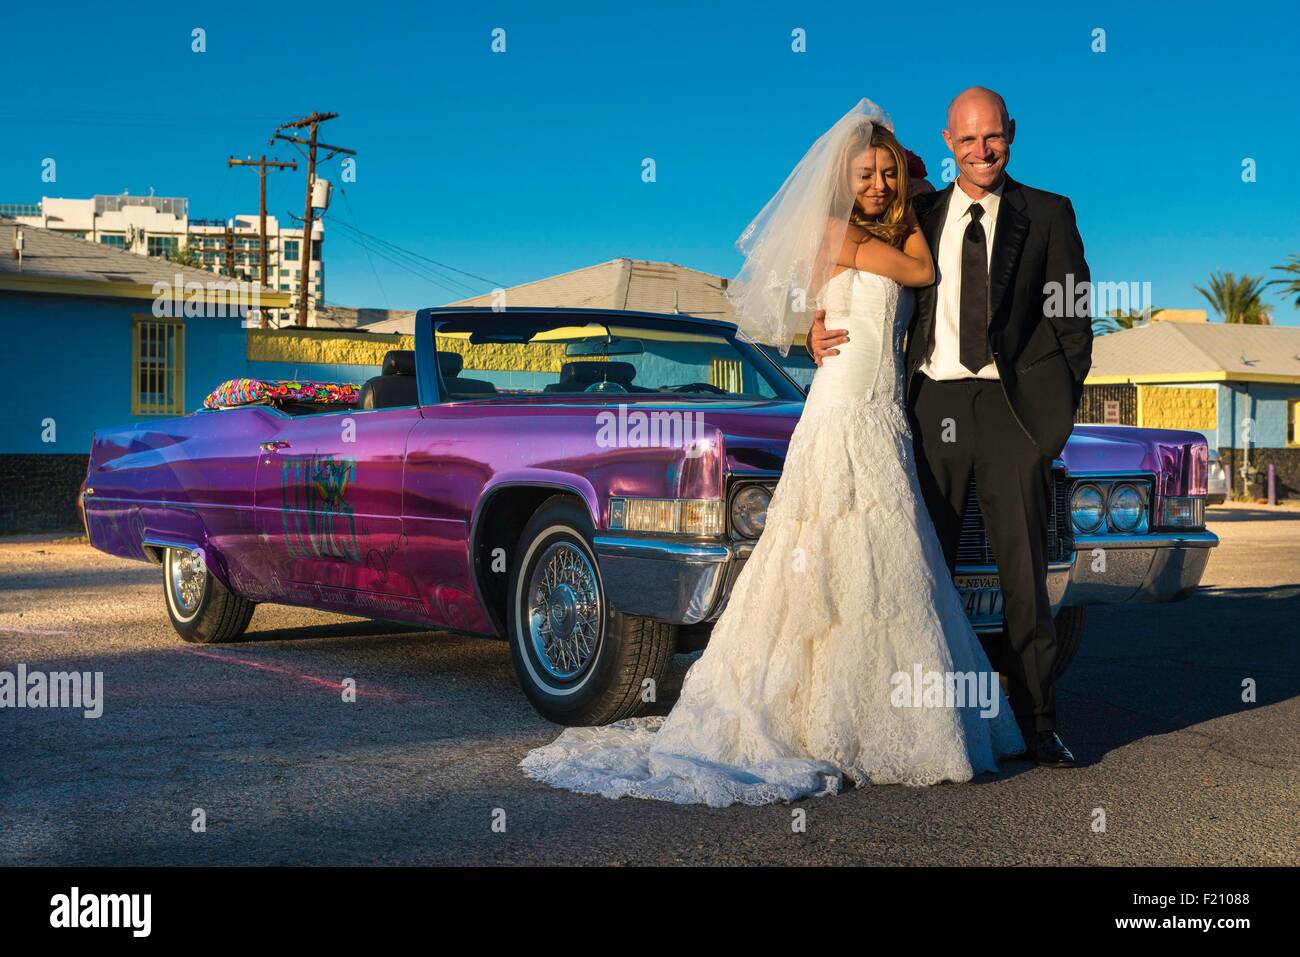 United States, Nevada, le Strip, nouvelle mariée dans une limousine Banque D'Images